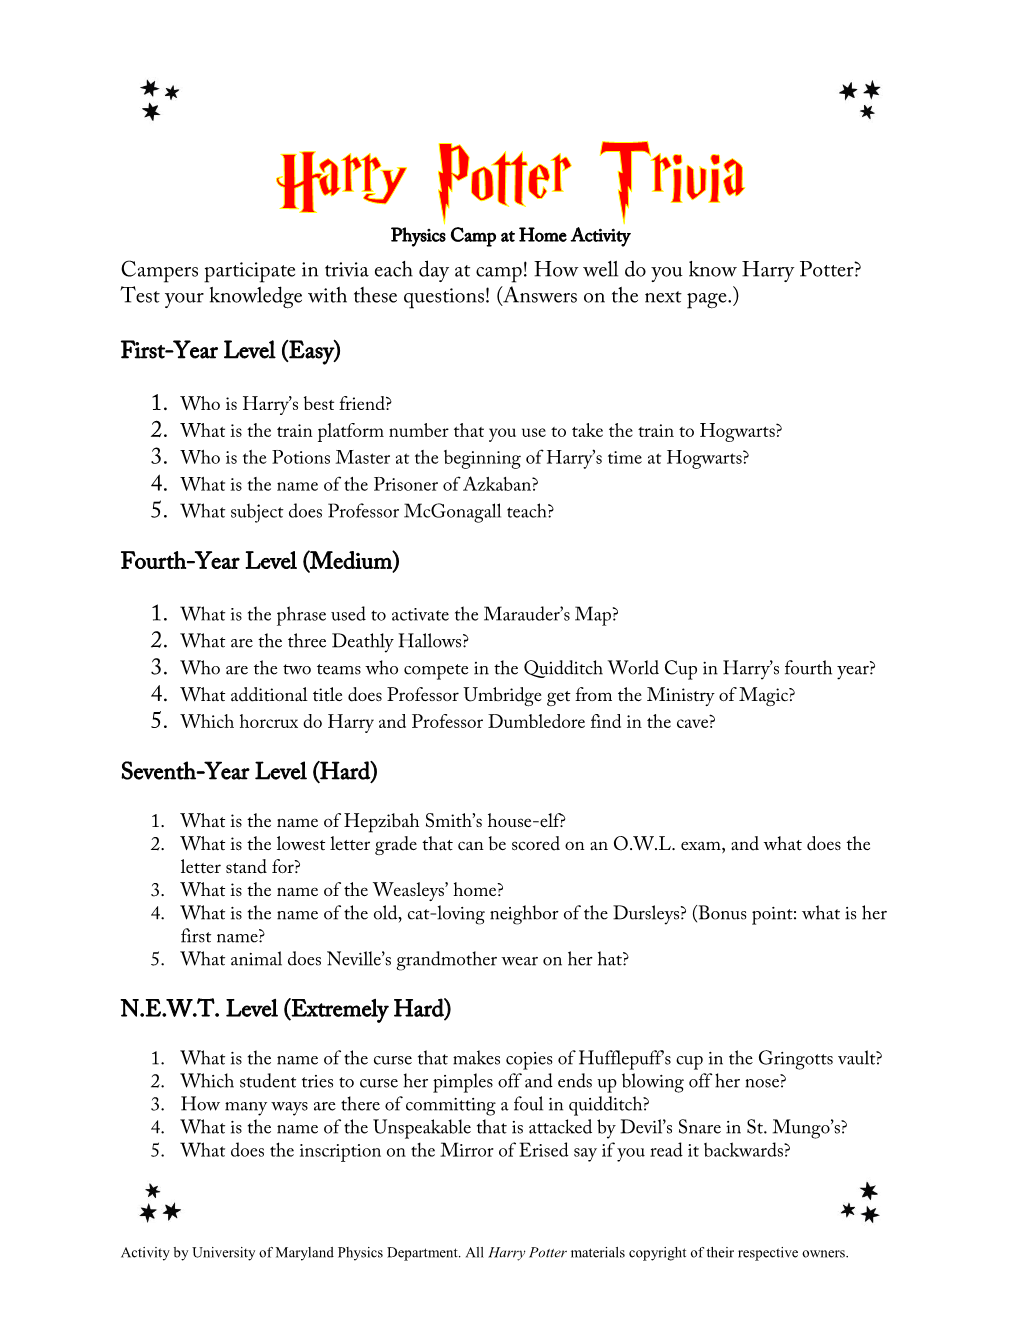 Harry Potter and Physics Trivia